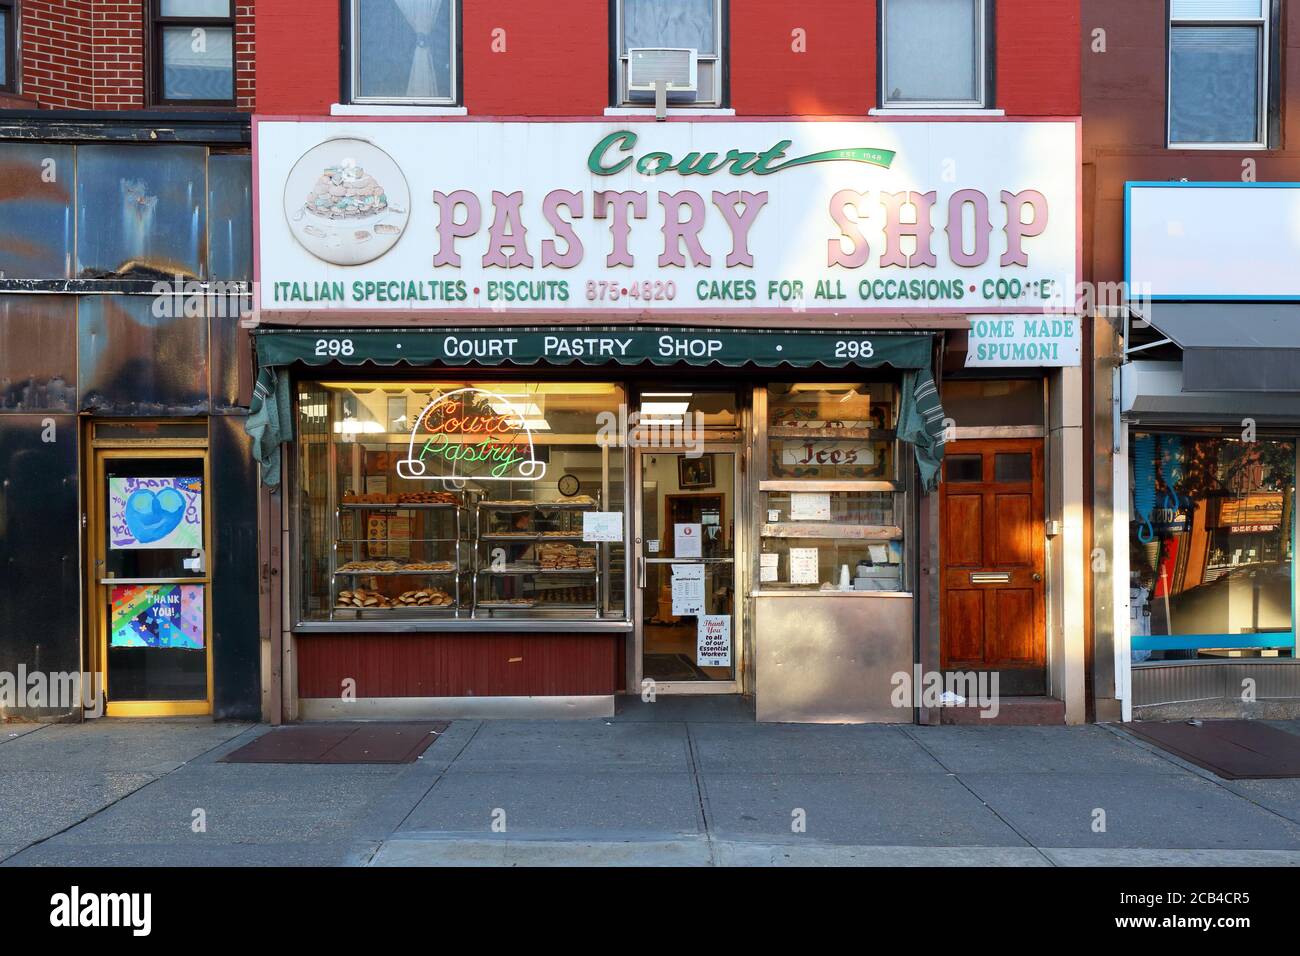 Court Pastry Shop, 298 Court St, Brooklyn, New York. Il negozio esterno di una panetteria italiana americana nel quartiere Carroll Gardens. Foto Stock